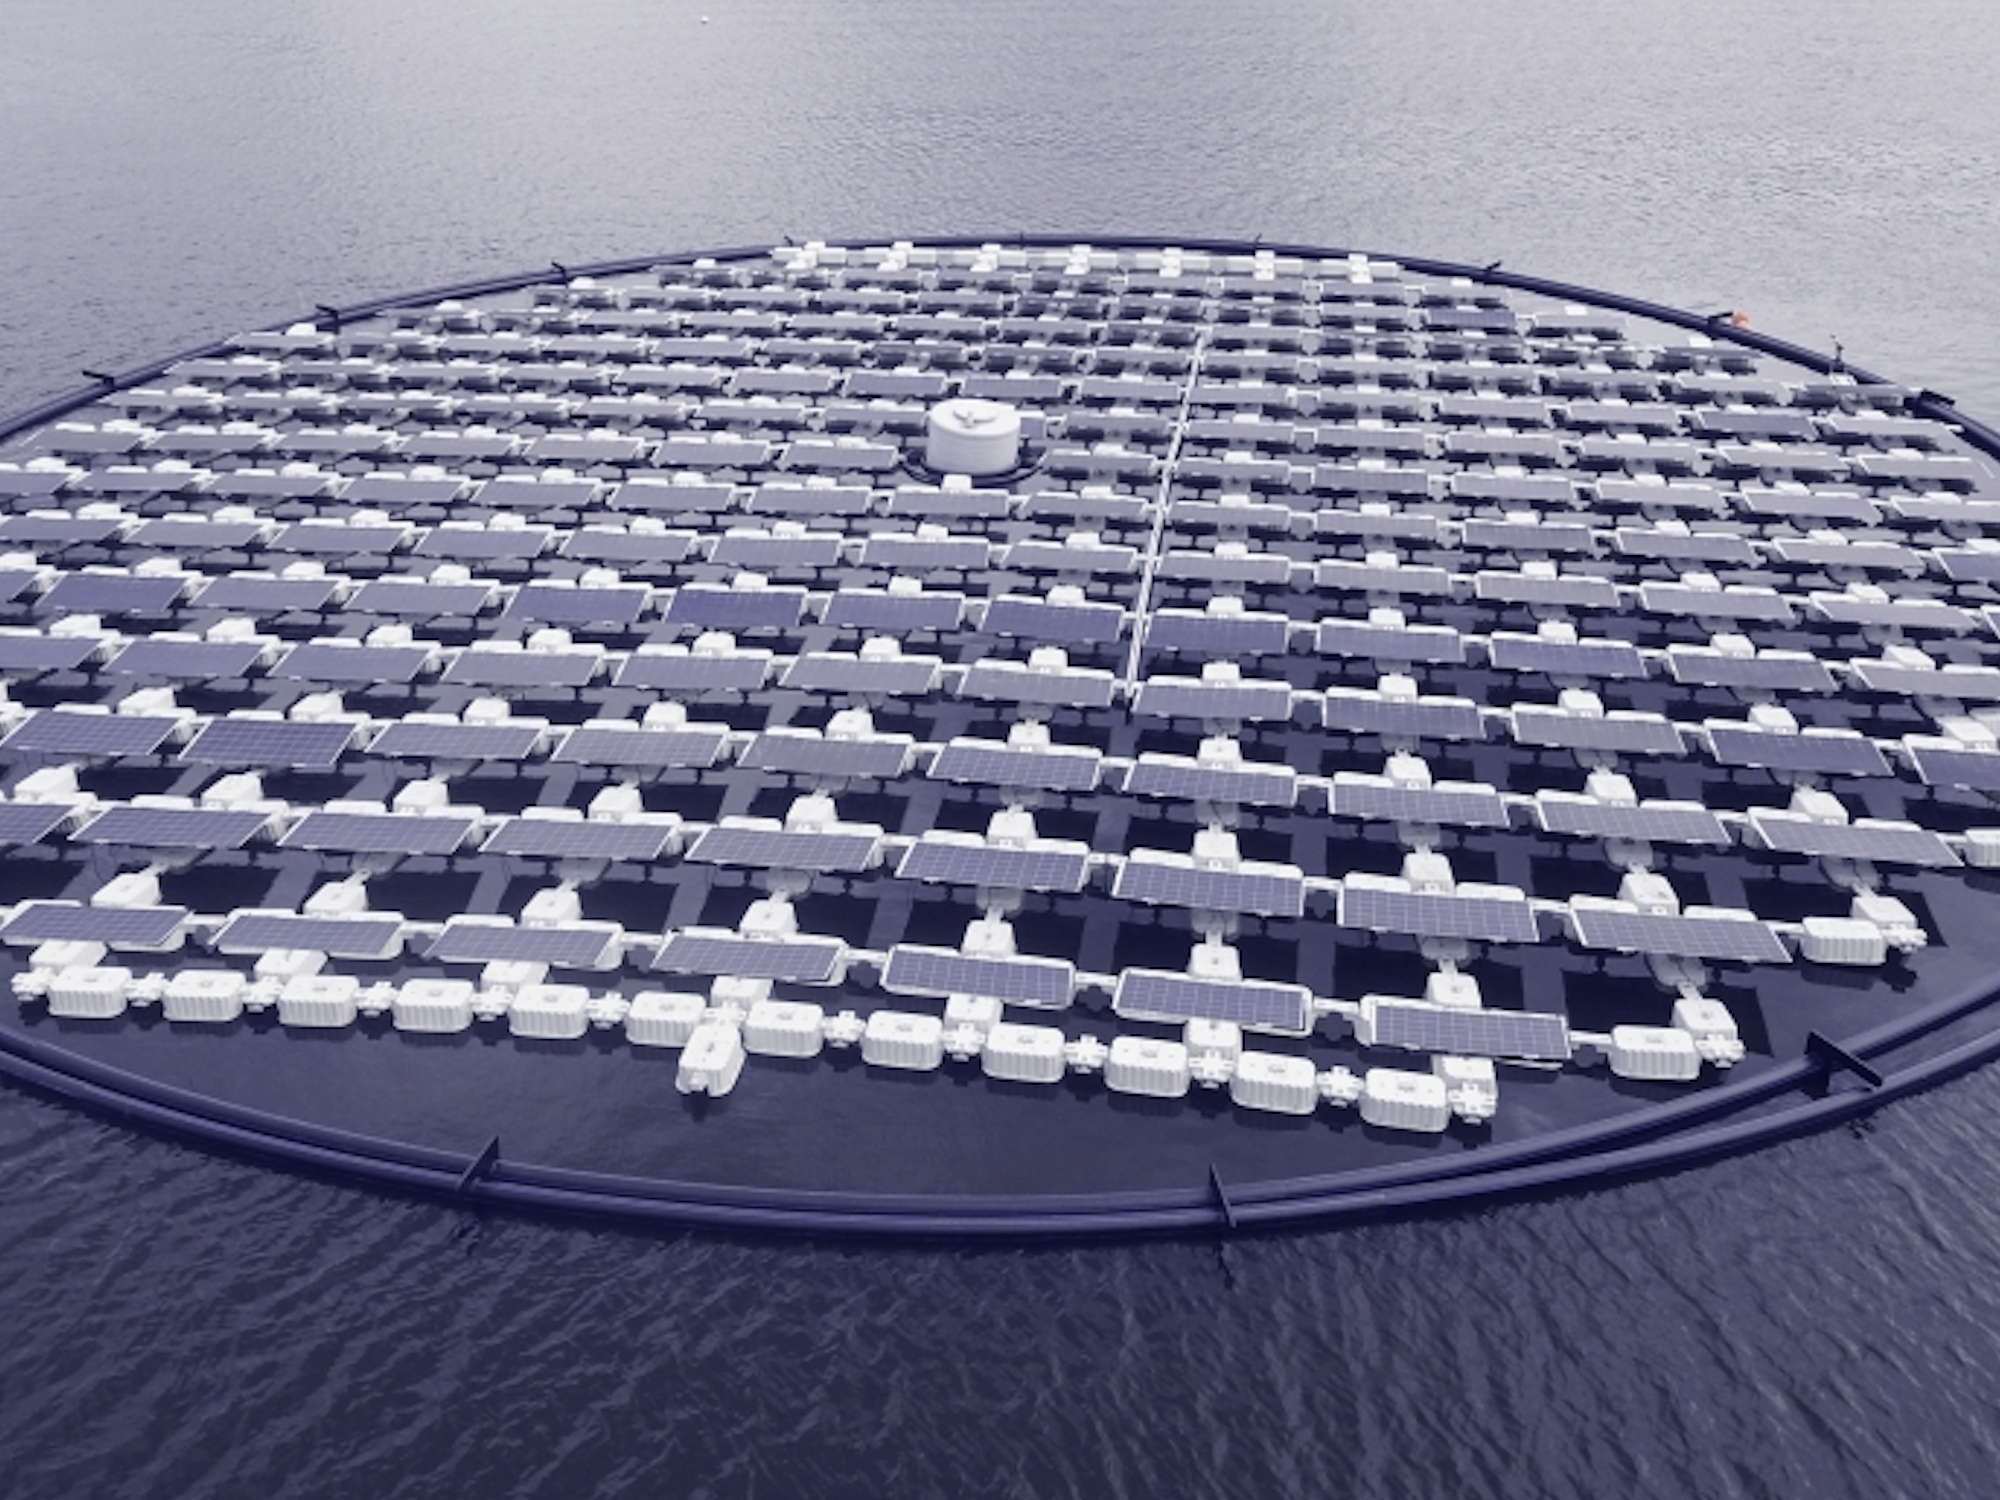 This new floating solar farm follows the sun like a flower